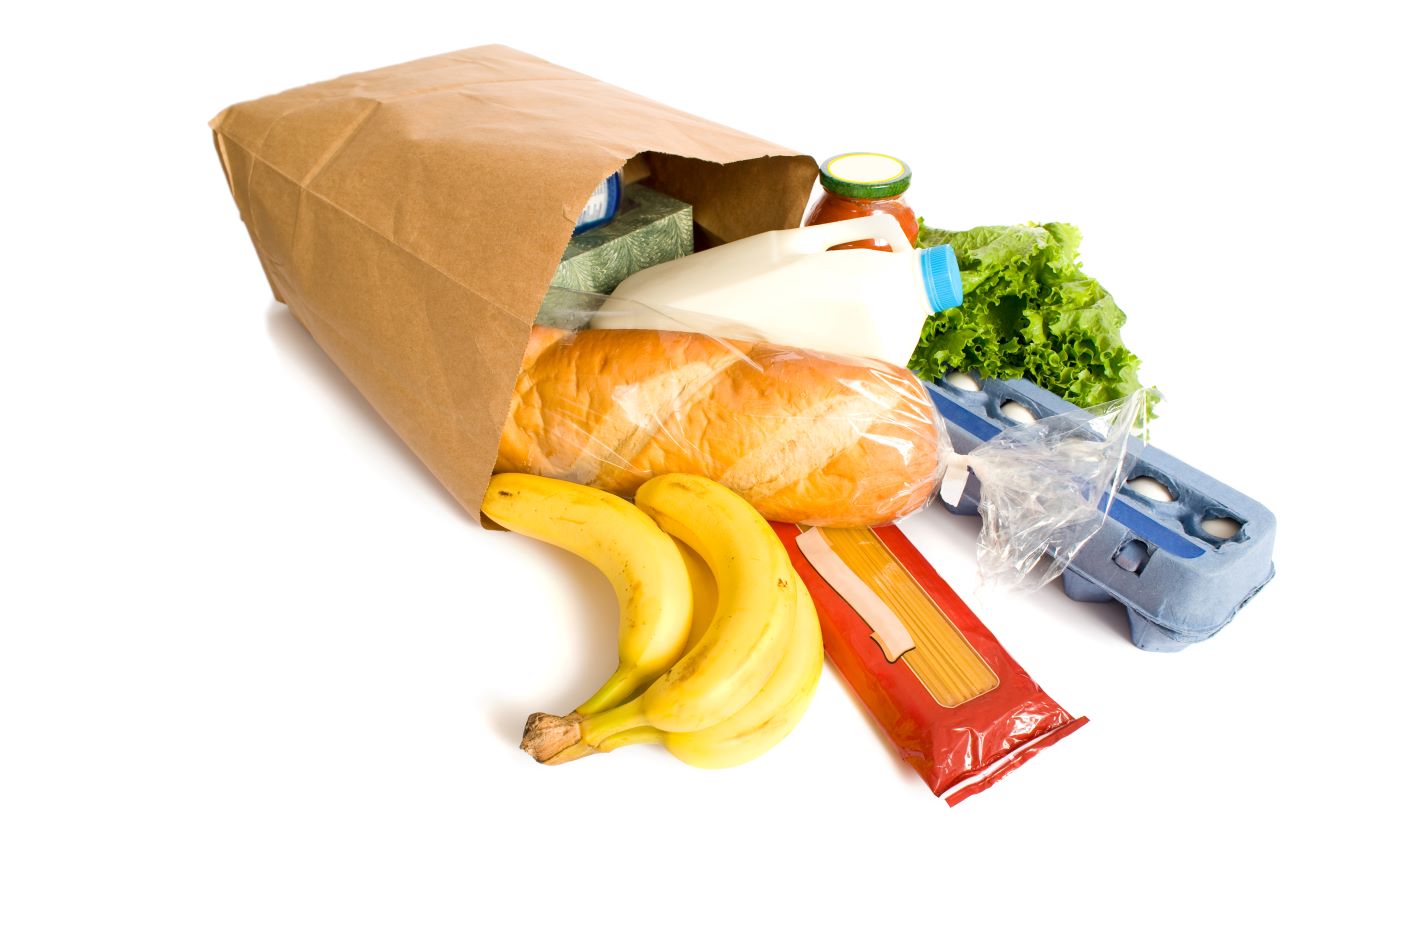 Food packaged in paper bag